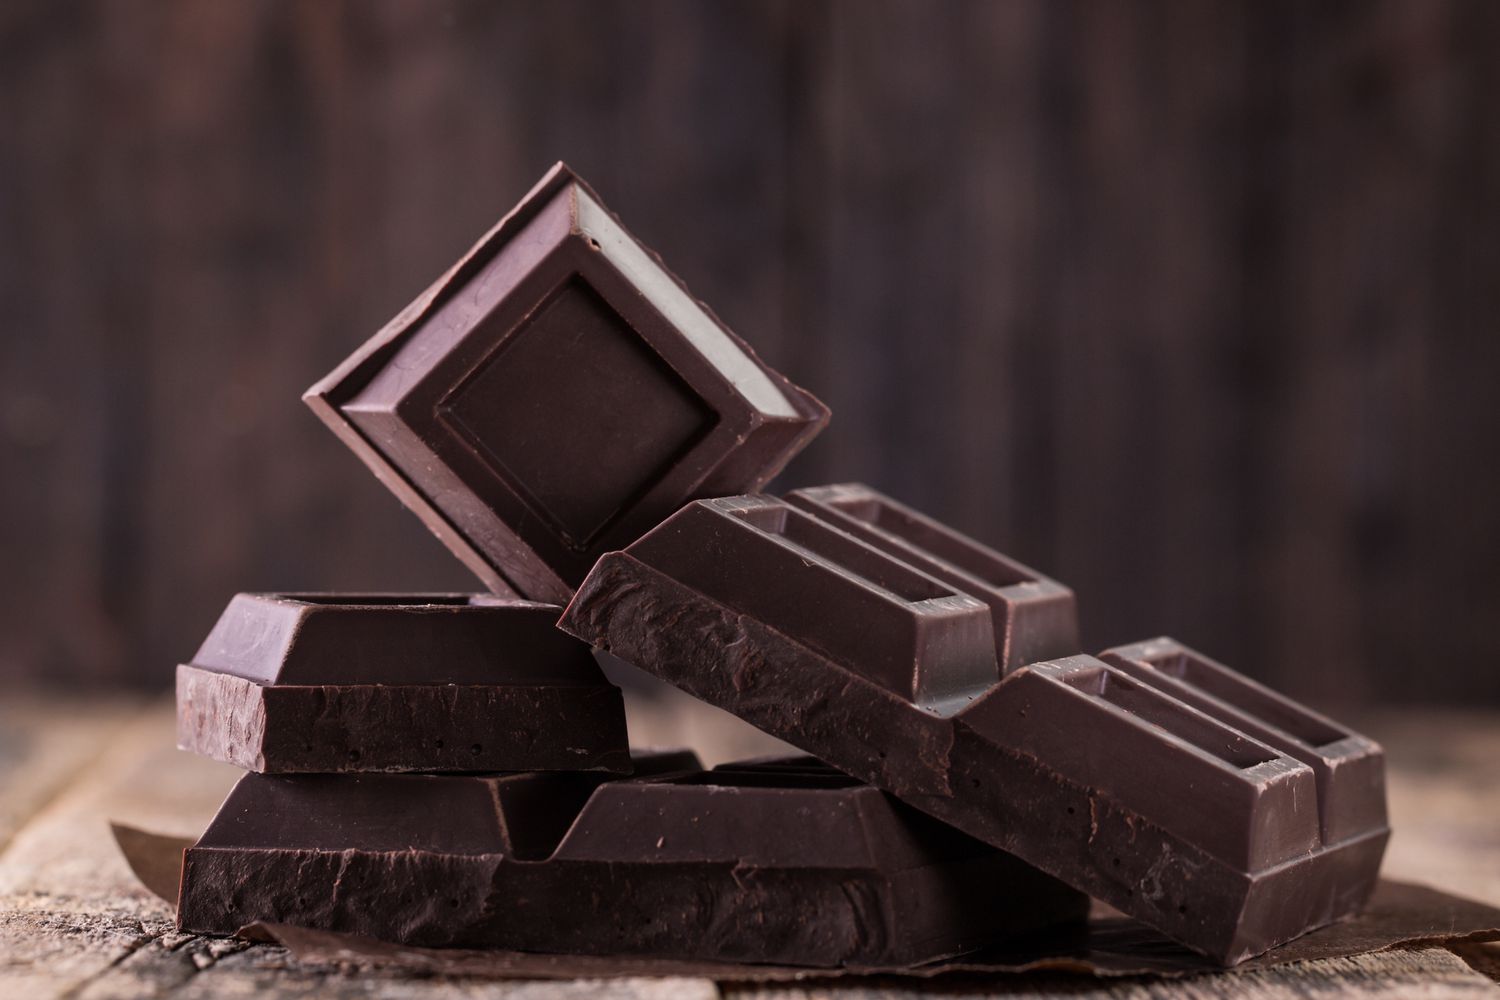 El chocolate negro podría contener plomo, pero los expertos dicen que no hay que asustarse